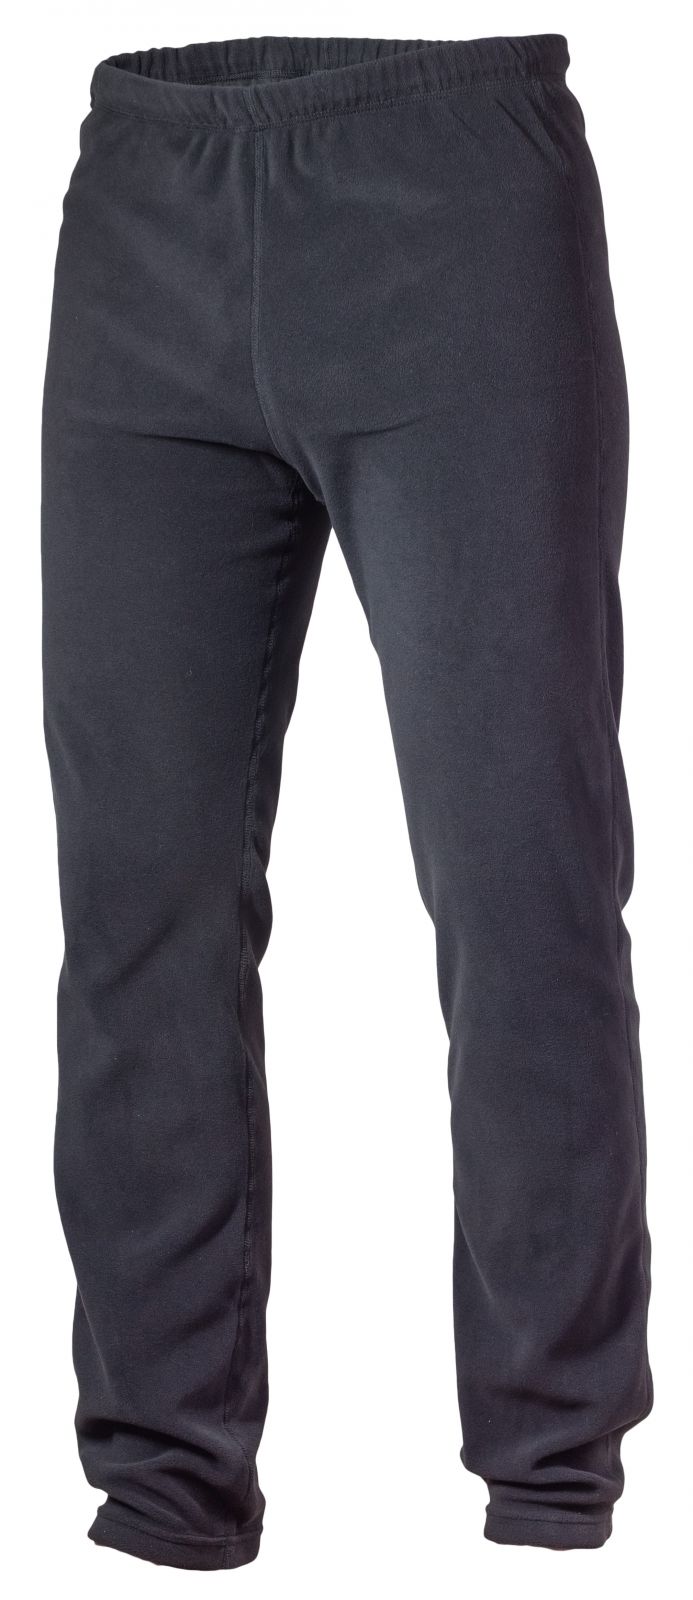 Warmpeace Jive black kalhoty z Polartec Micro - XL